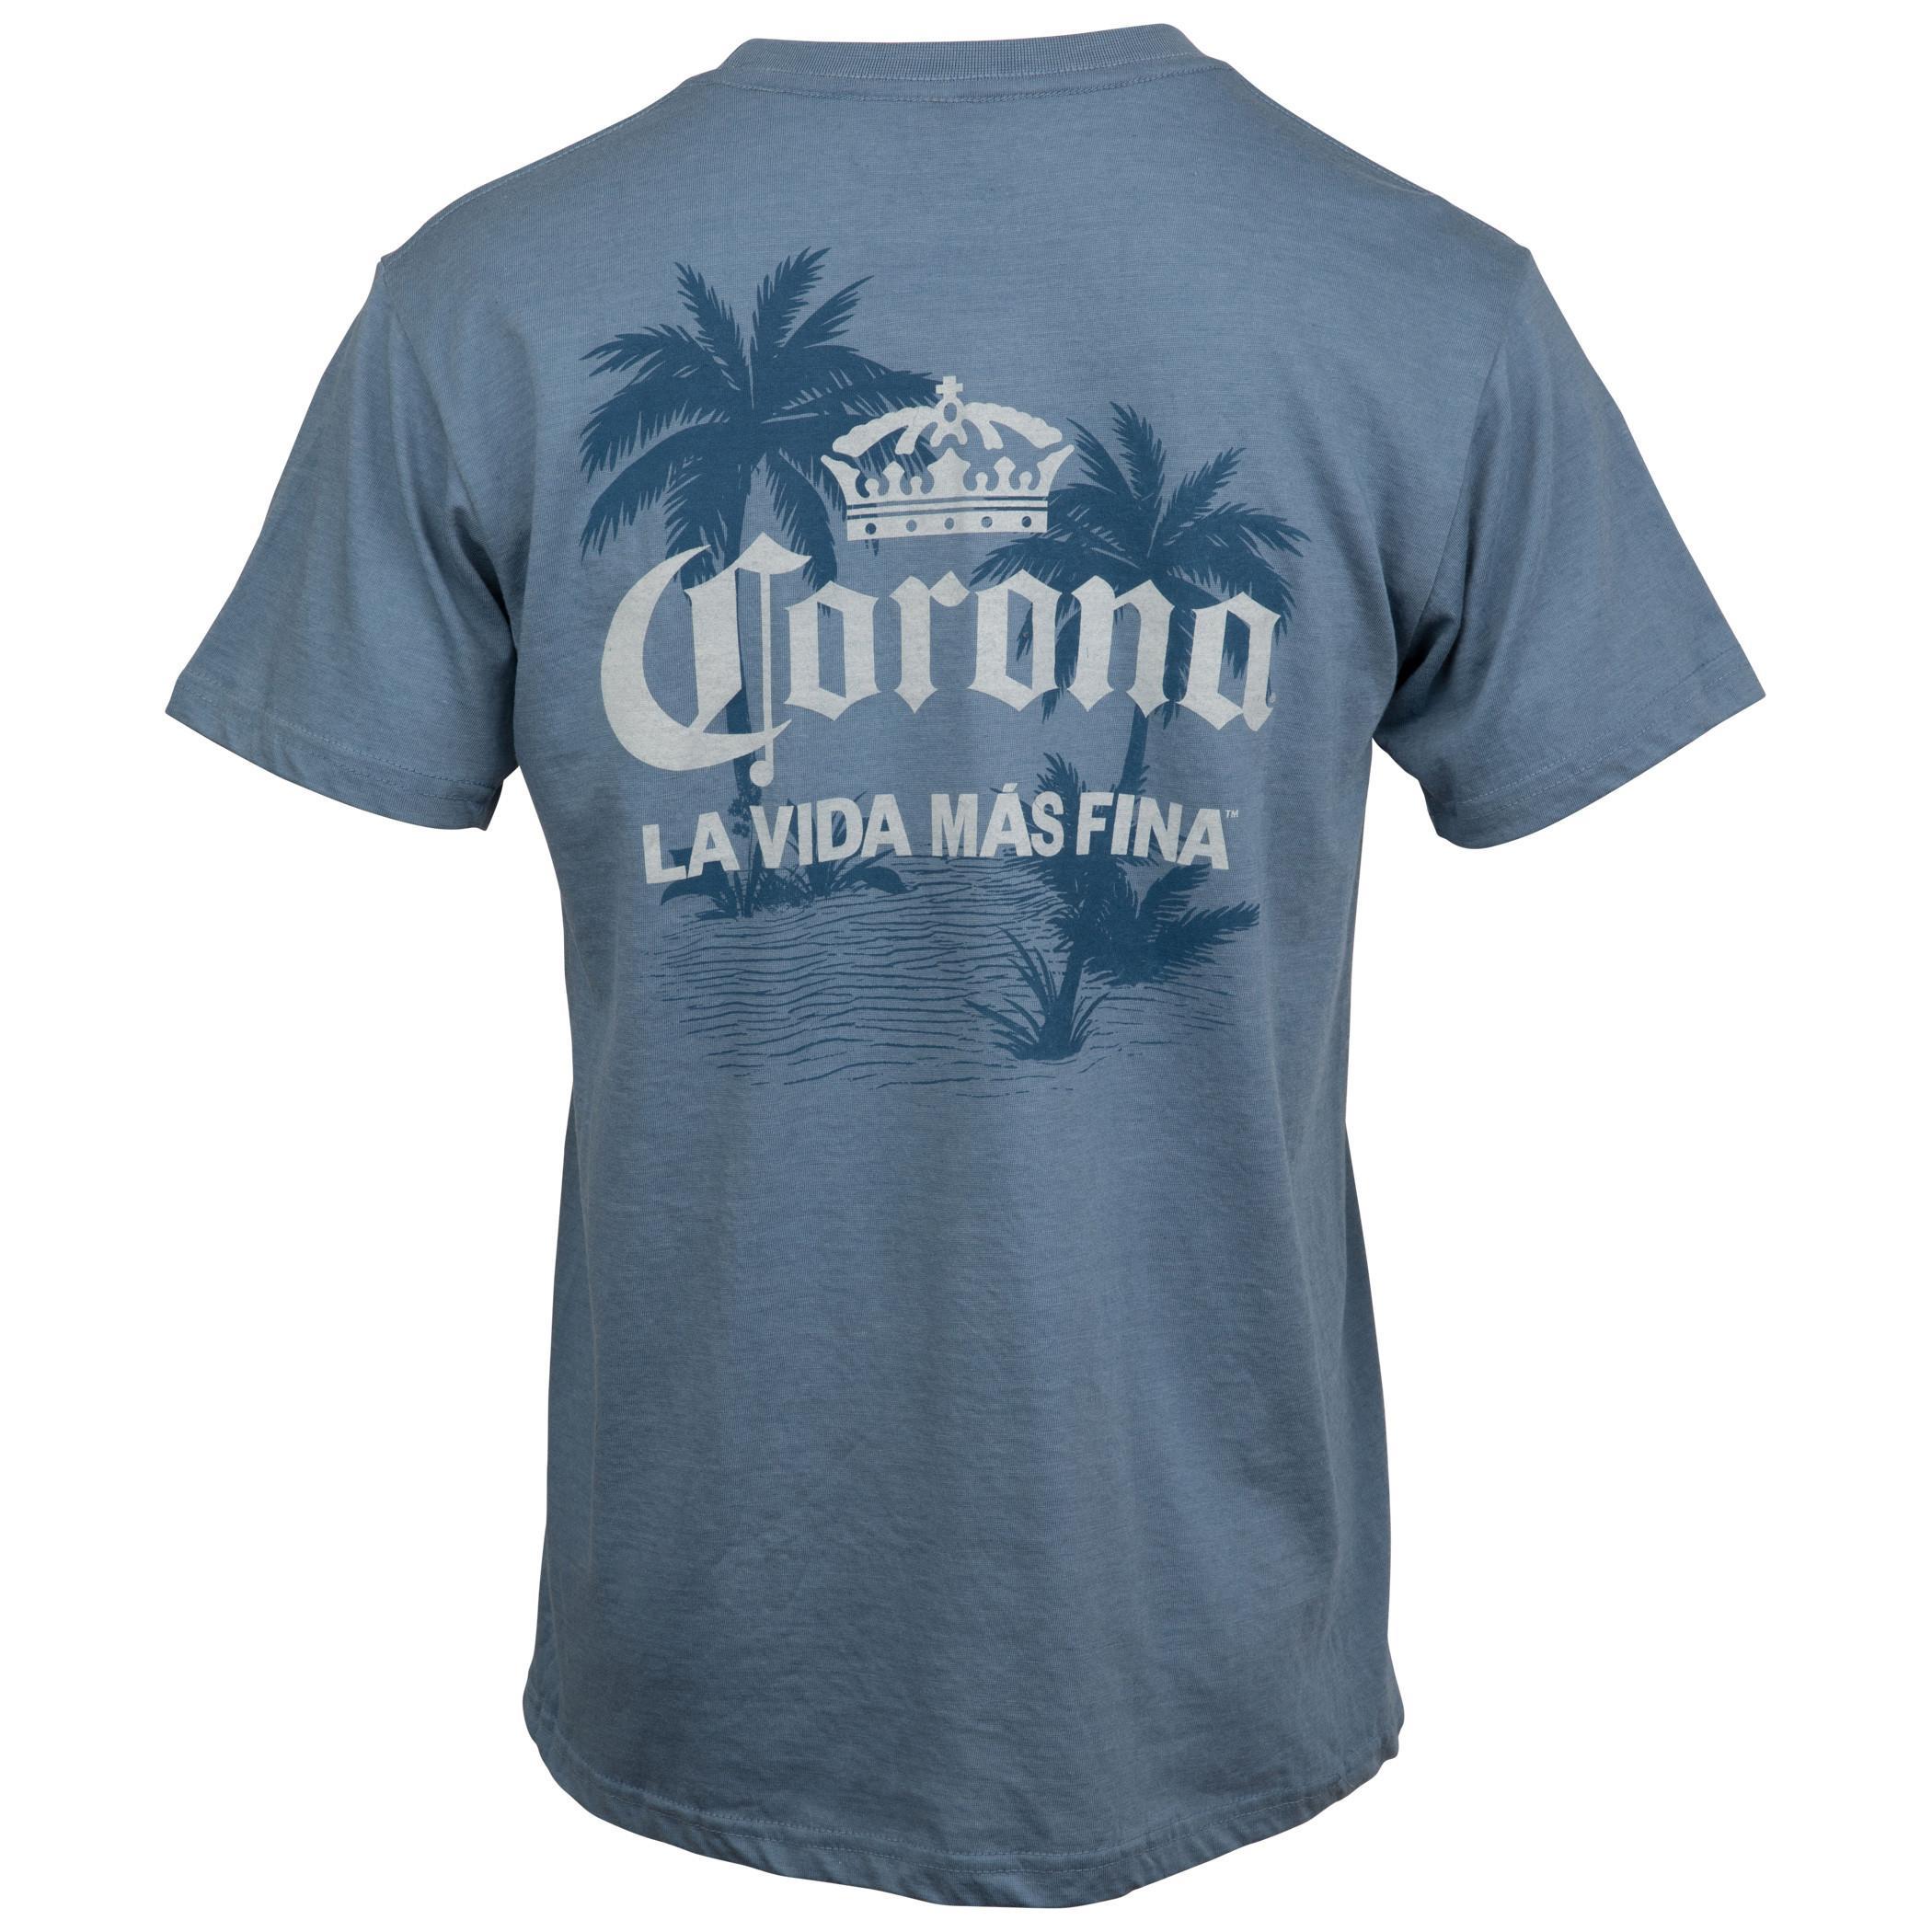 Corona Extra La Vida Mas Fina Palm Trees Front and Back Print T-Shirt Small